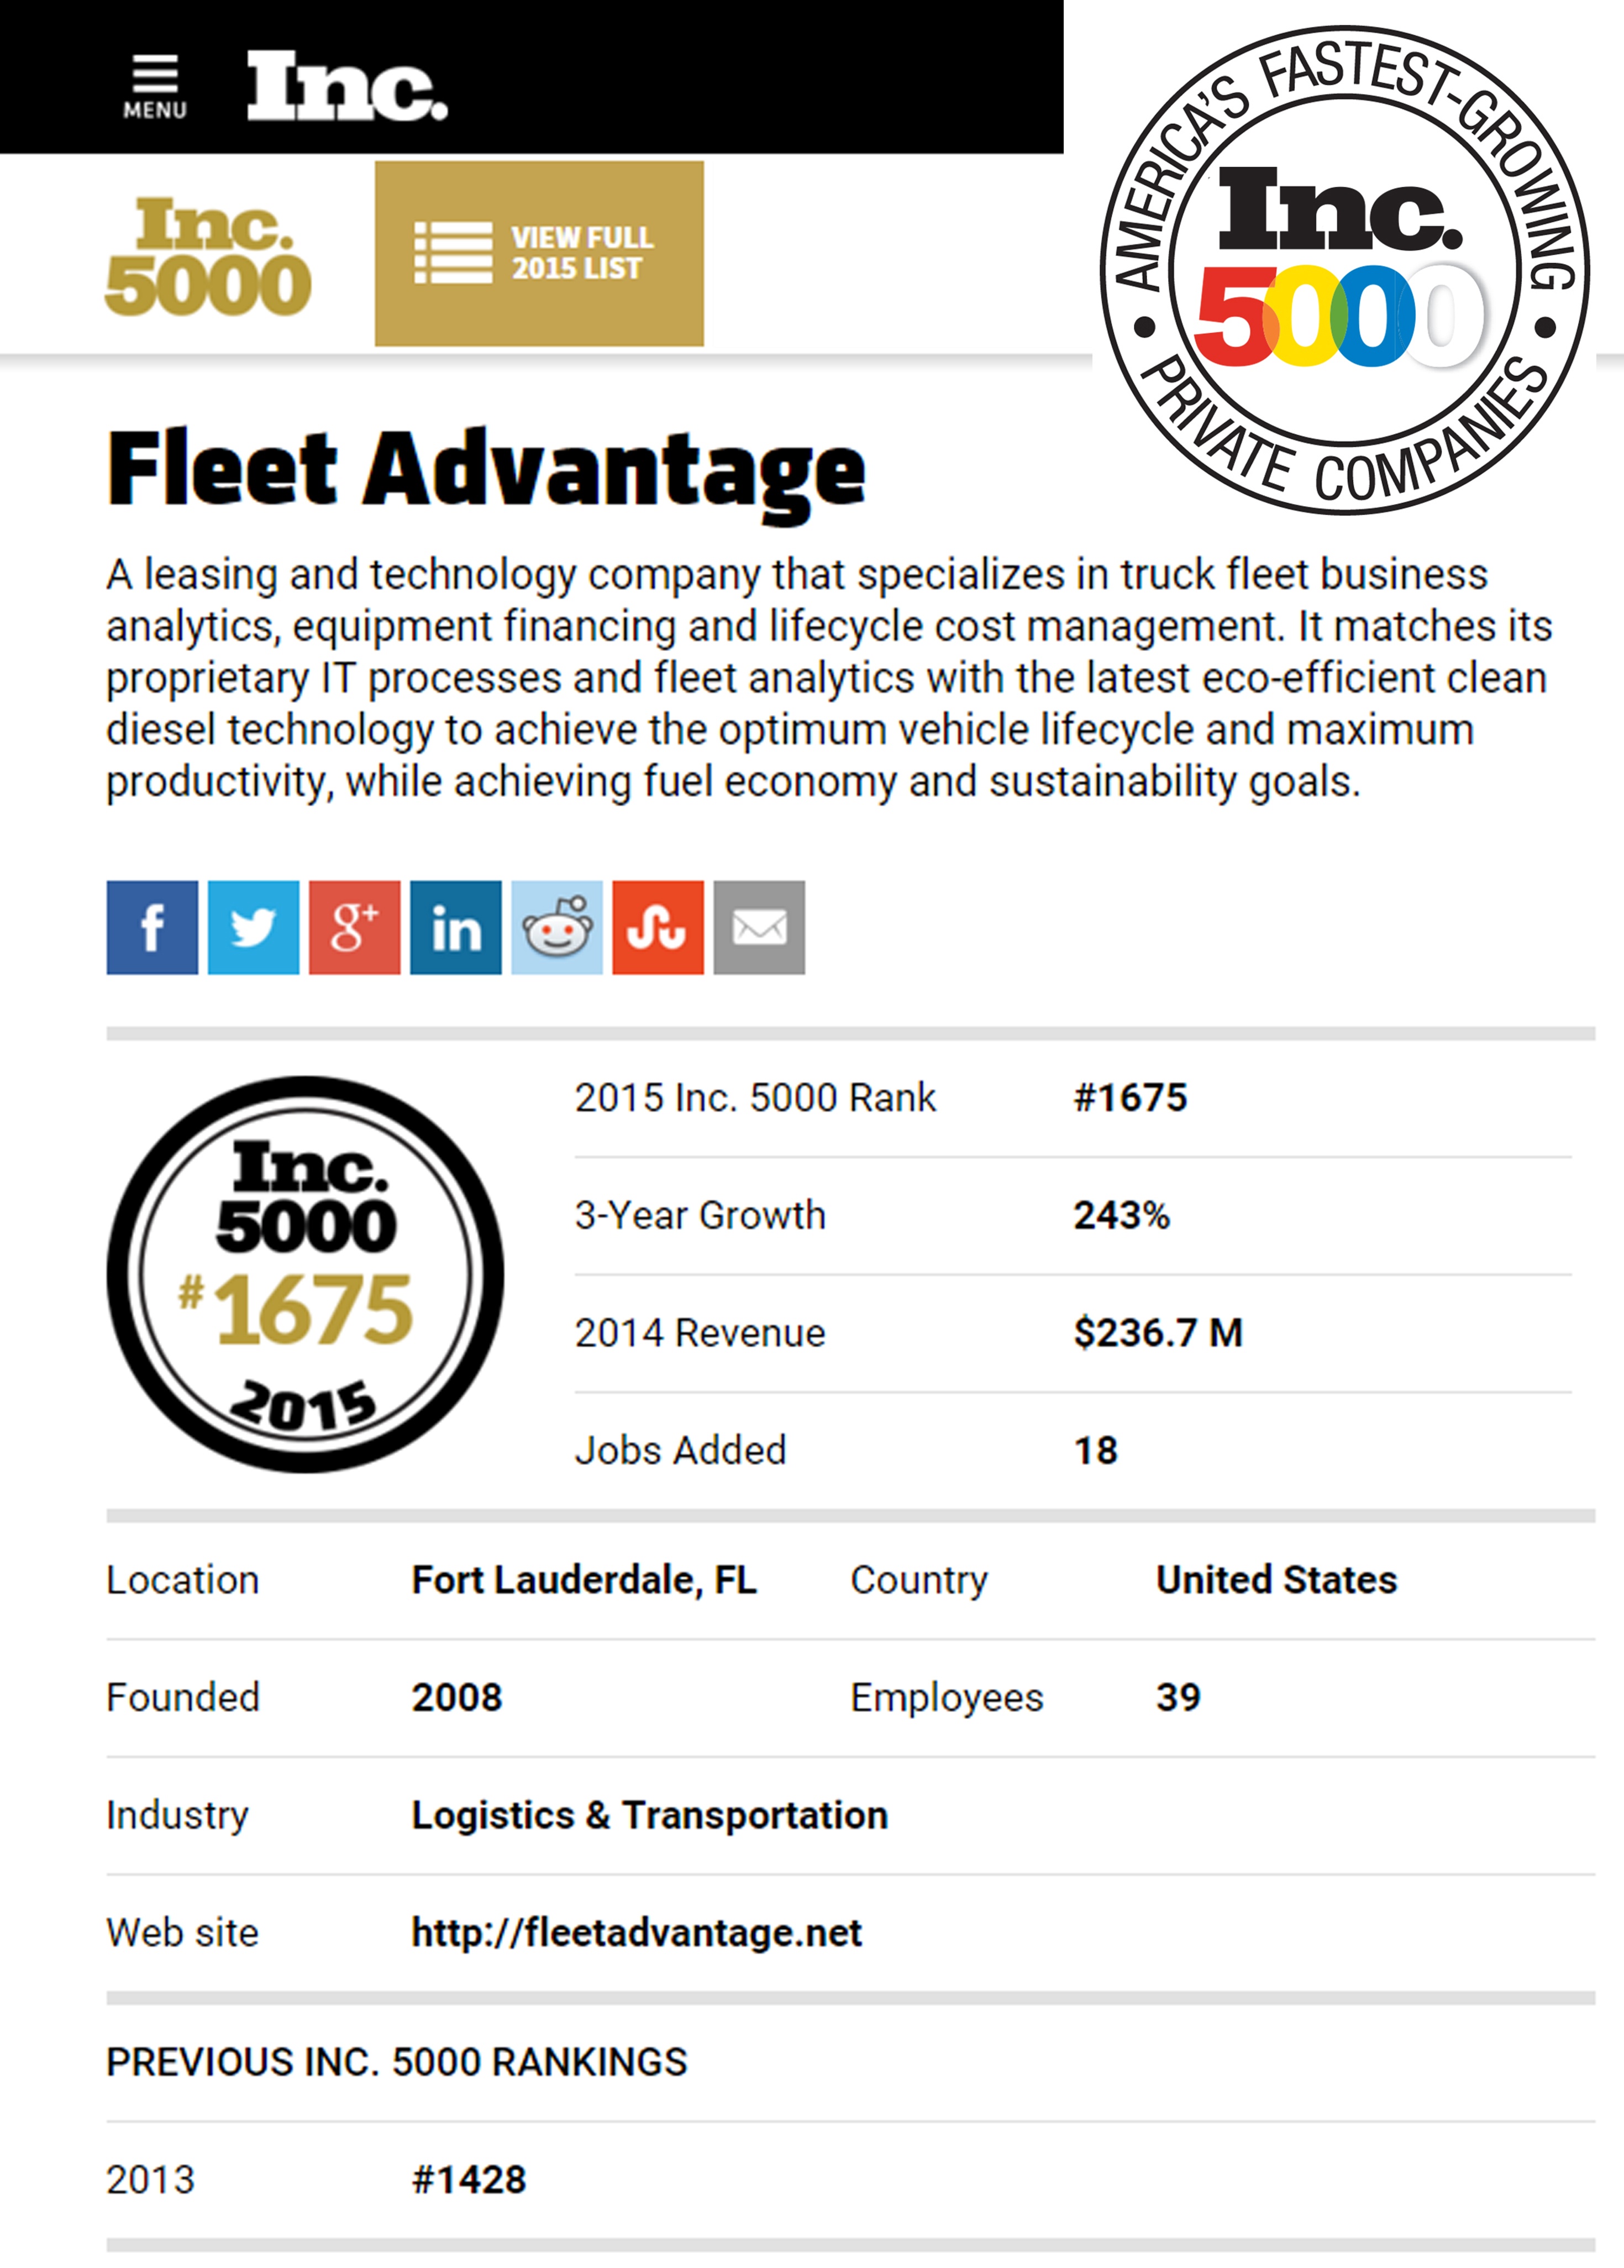 Fleet Advantage Inc 5000 2015